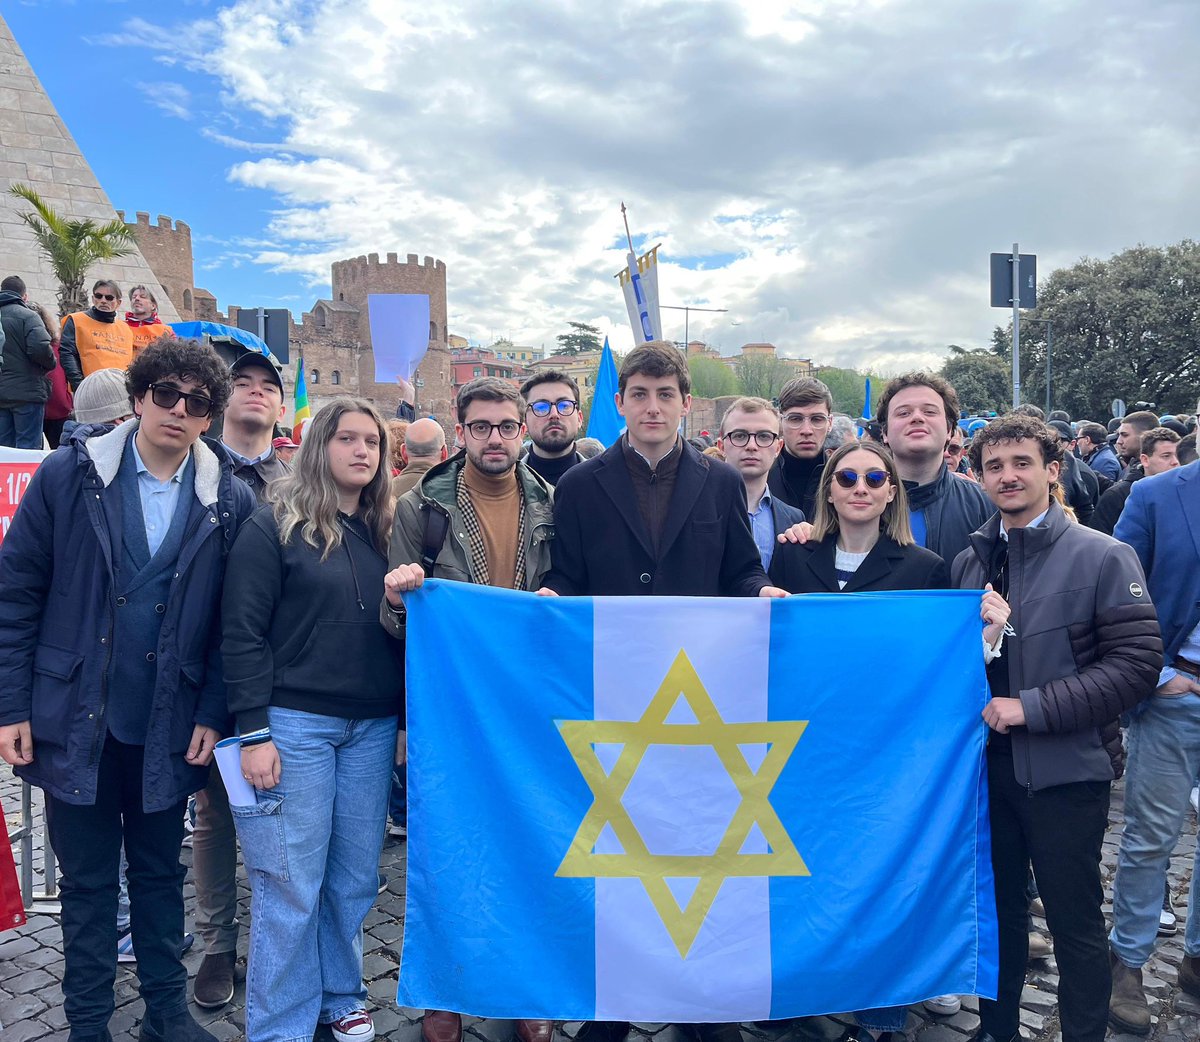 Con gli amici della brigata ebraica e una delegazione del nostro movimento giovanile per festeggiare insieme il 25 Aprile nel segno della Libertà. Il bene più importante che ci sia. @fi_giovani